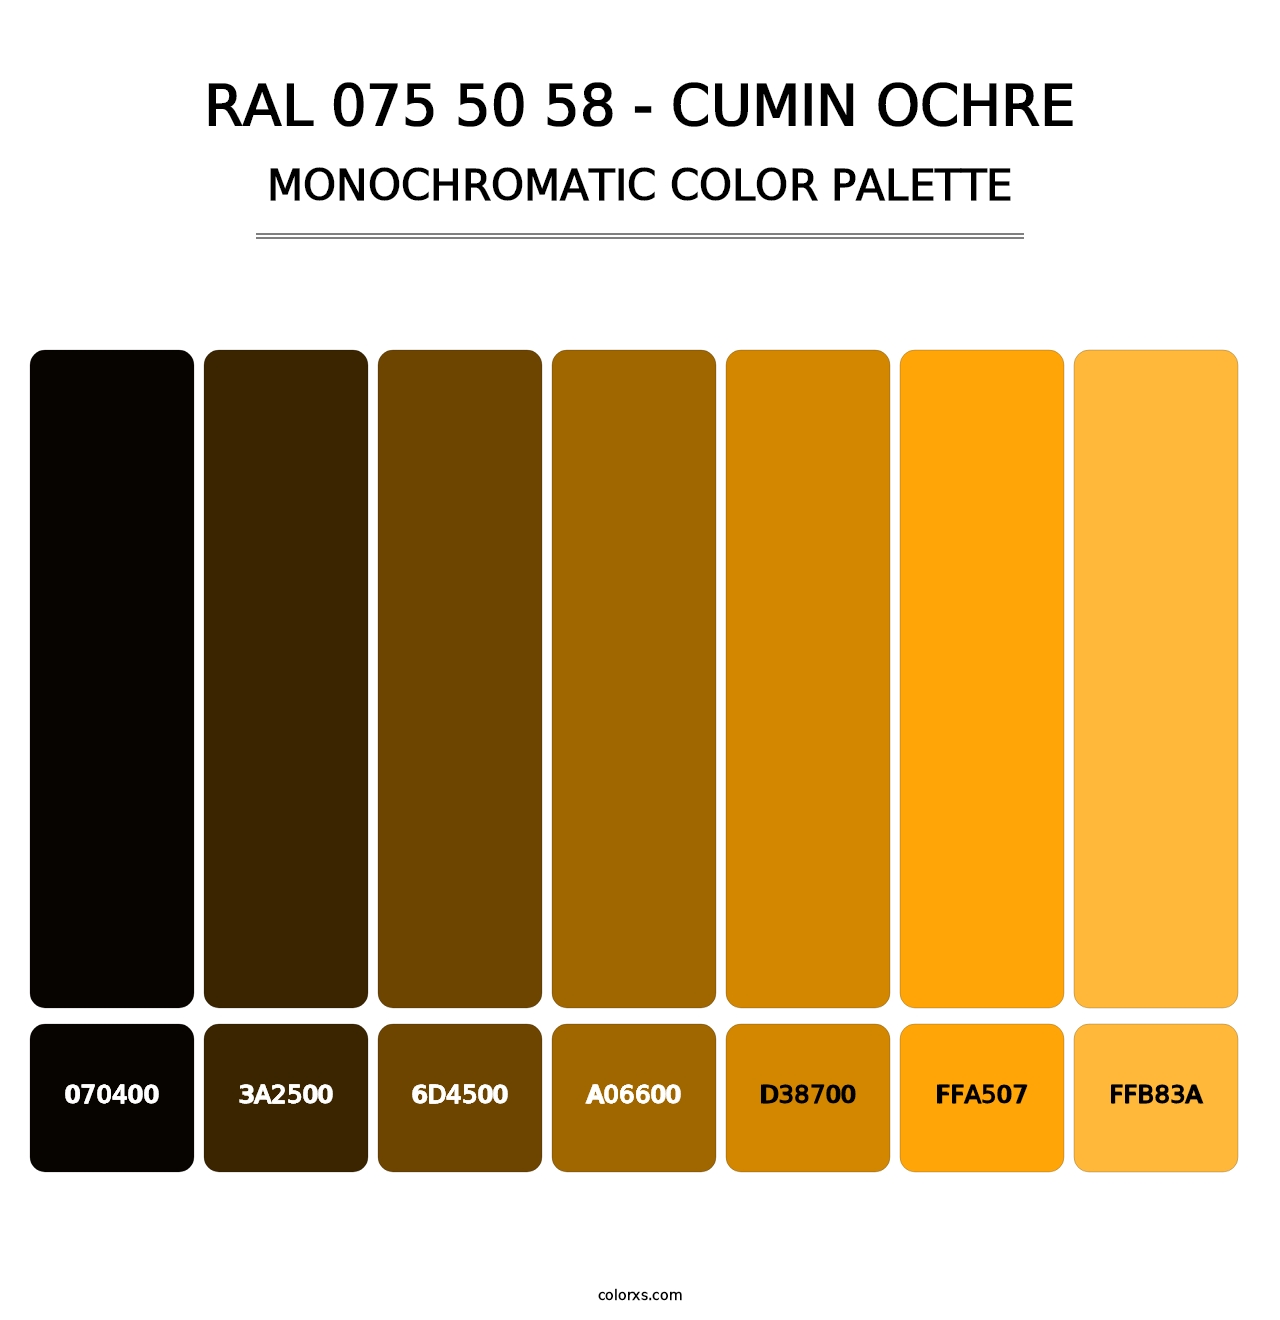 RAL 075 50 58 - Cumin Ochre - Monochromatic Color Palette